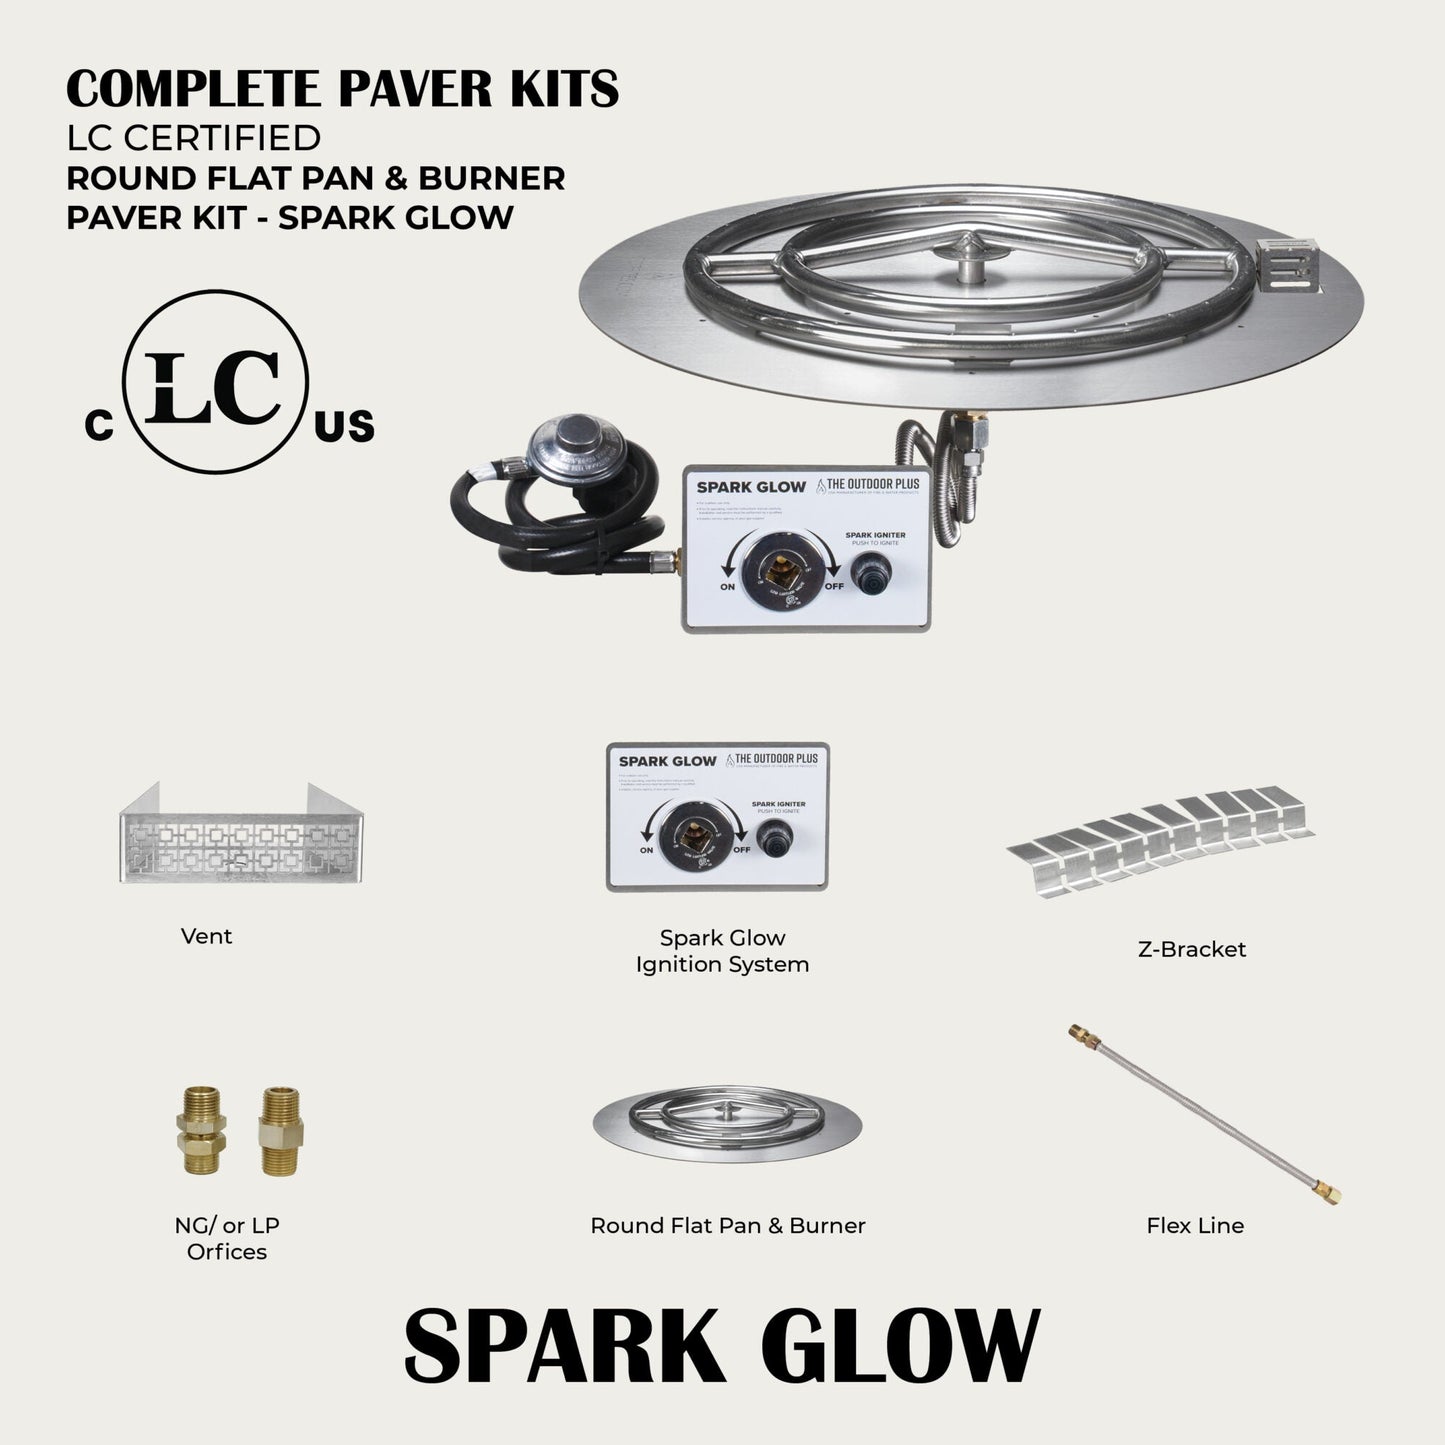 Round Flat Pan & Round Burner Paver Kit - Spark Glow Ignition